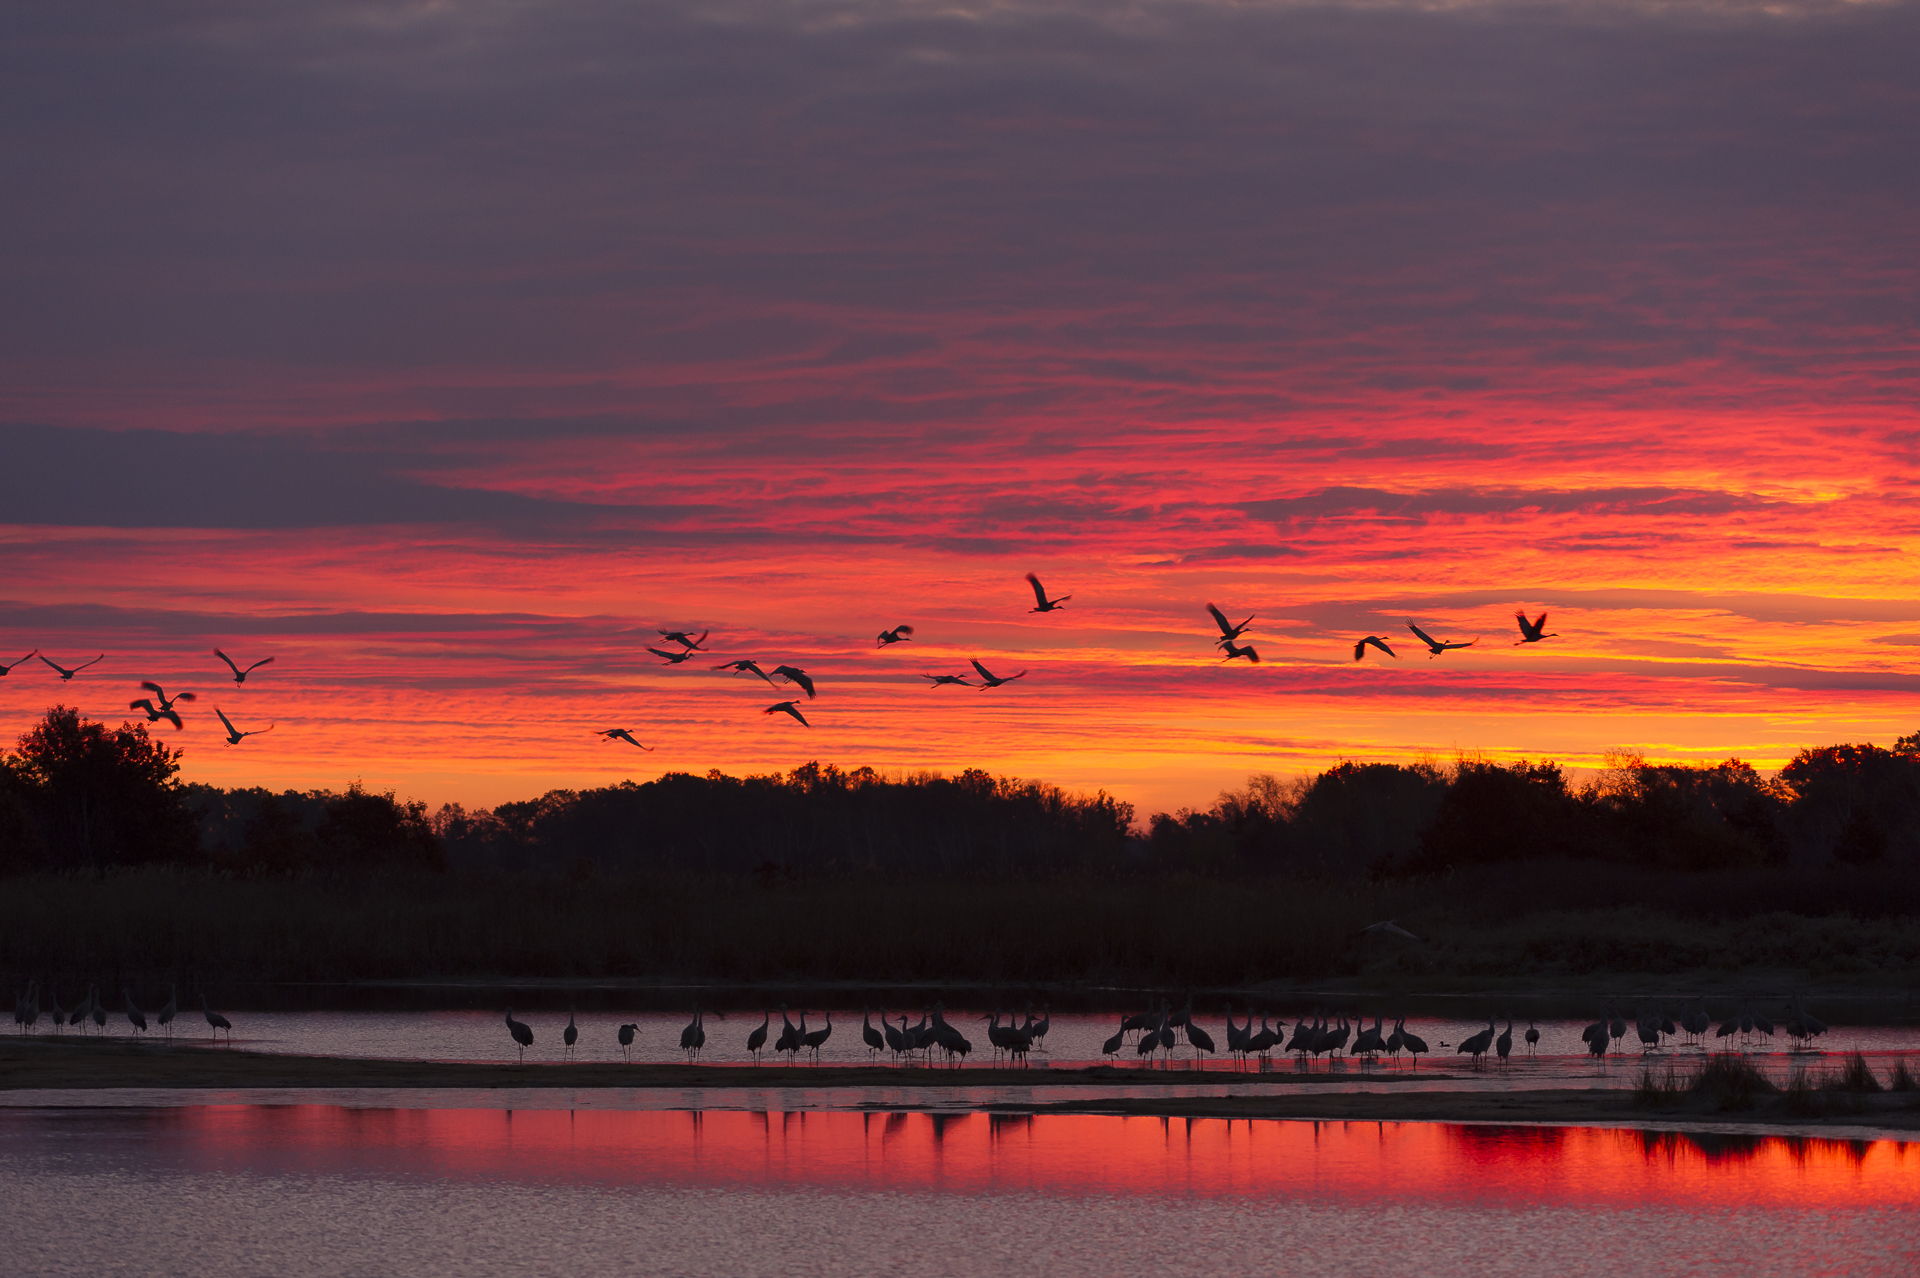 Sandhill cranes lift off at sunrise